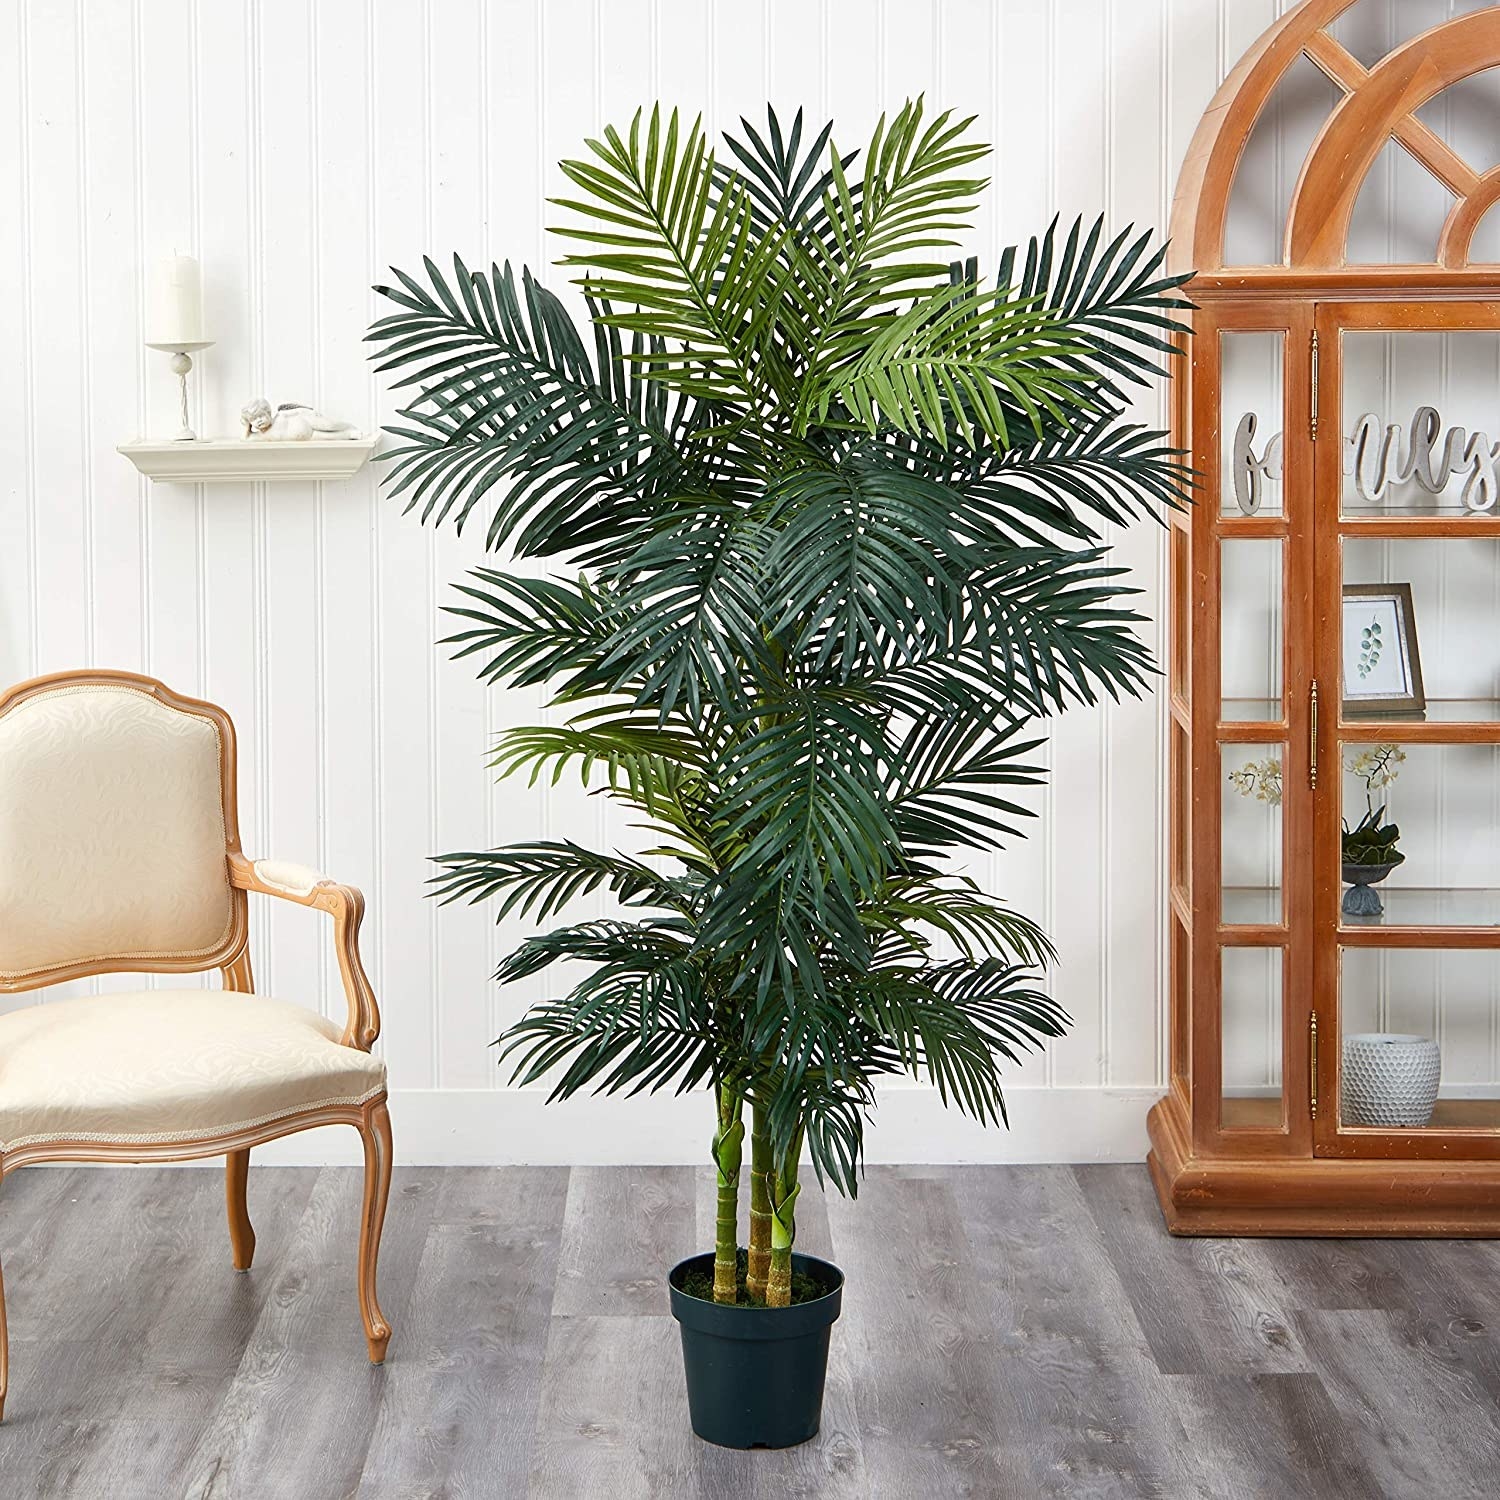 A 6.5-foot-tall Golden Kane palm tree